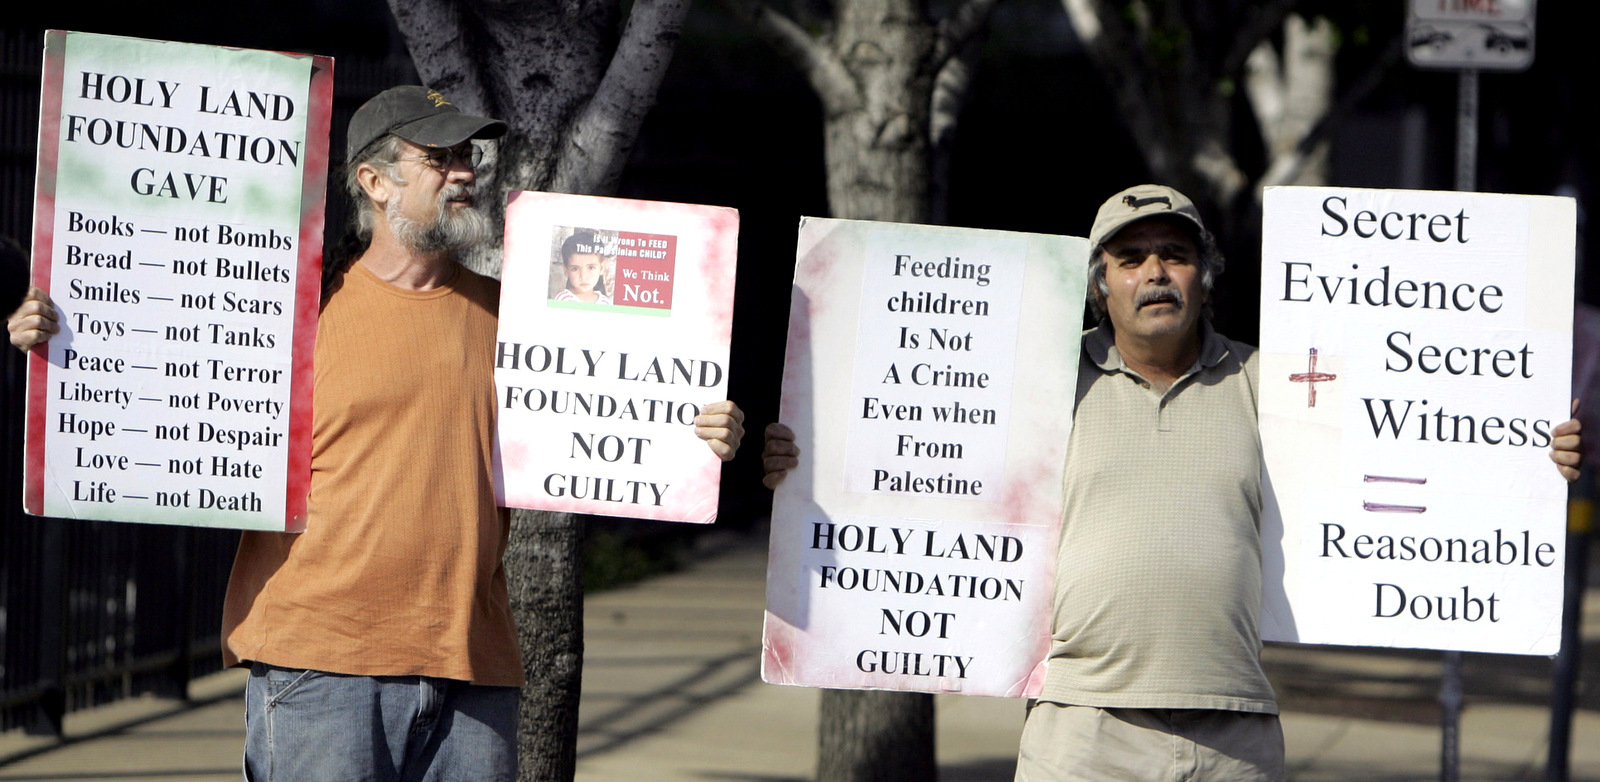 John Wolf, a la izquierda, y Hadi Jawad sostienen carteles que apoyan a los acusados de la Fundación Tierra Santa mientras se encontraban frente al tribunal federal en Dallas, Texas, el jueves 18 de octubre de 2007. (AP / LM Otero)